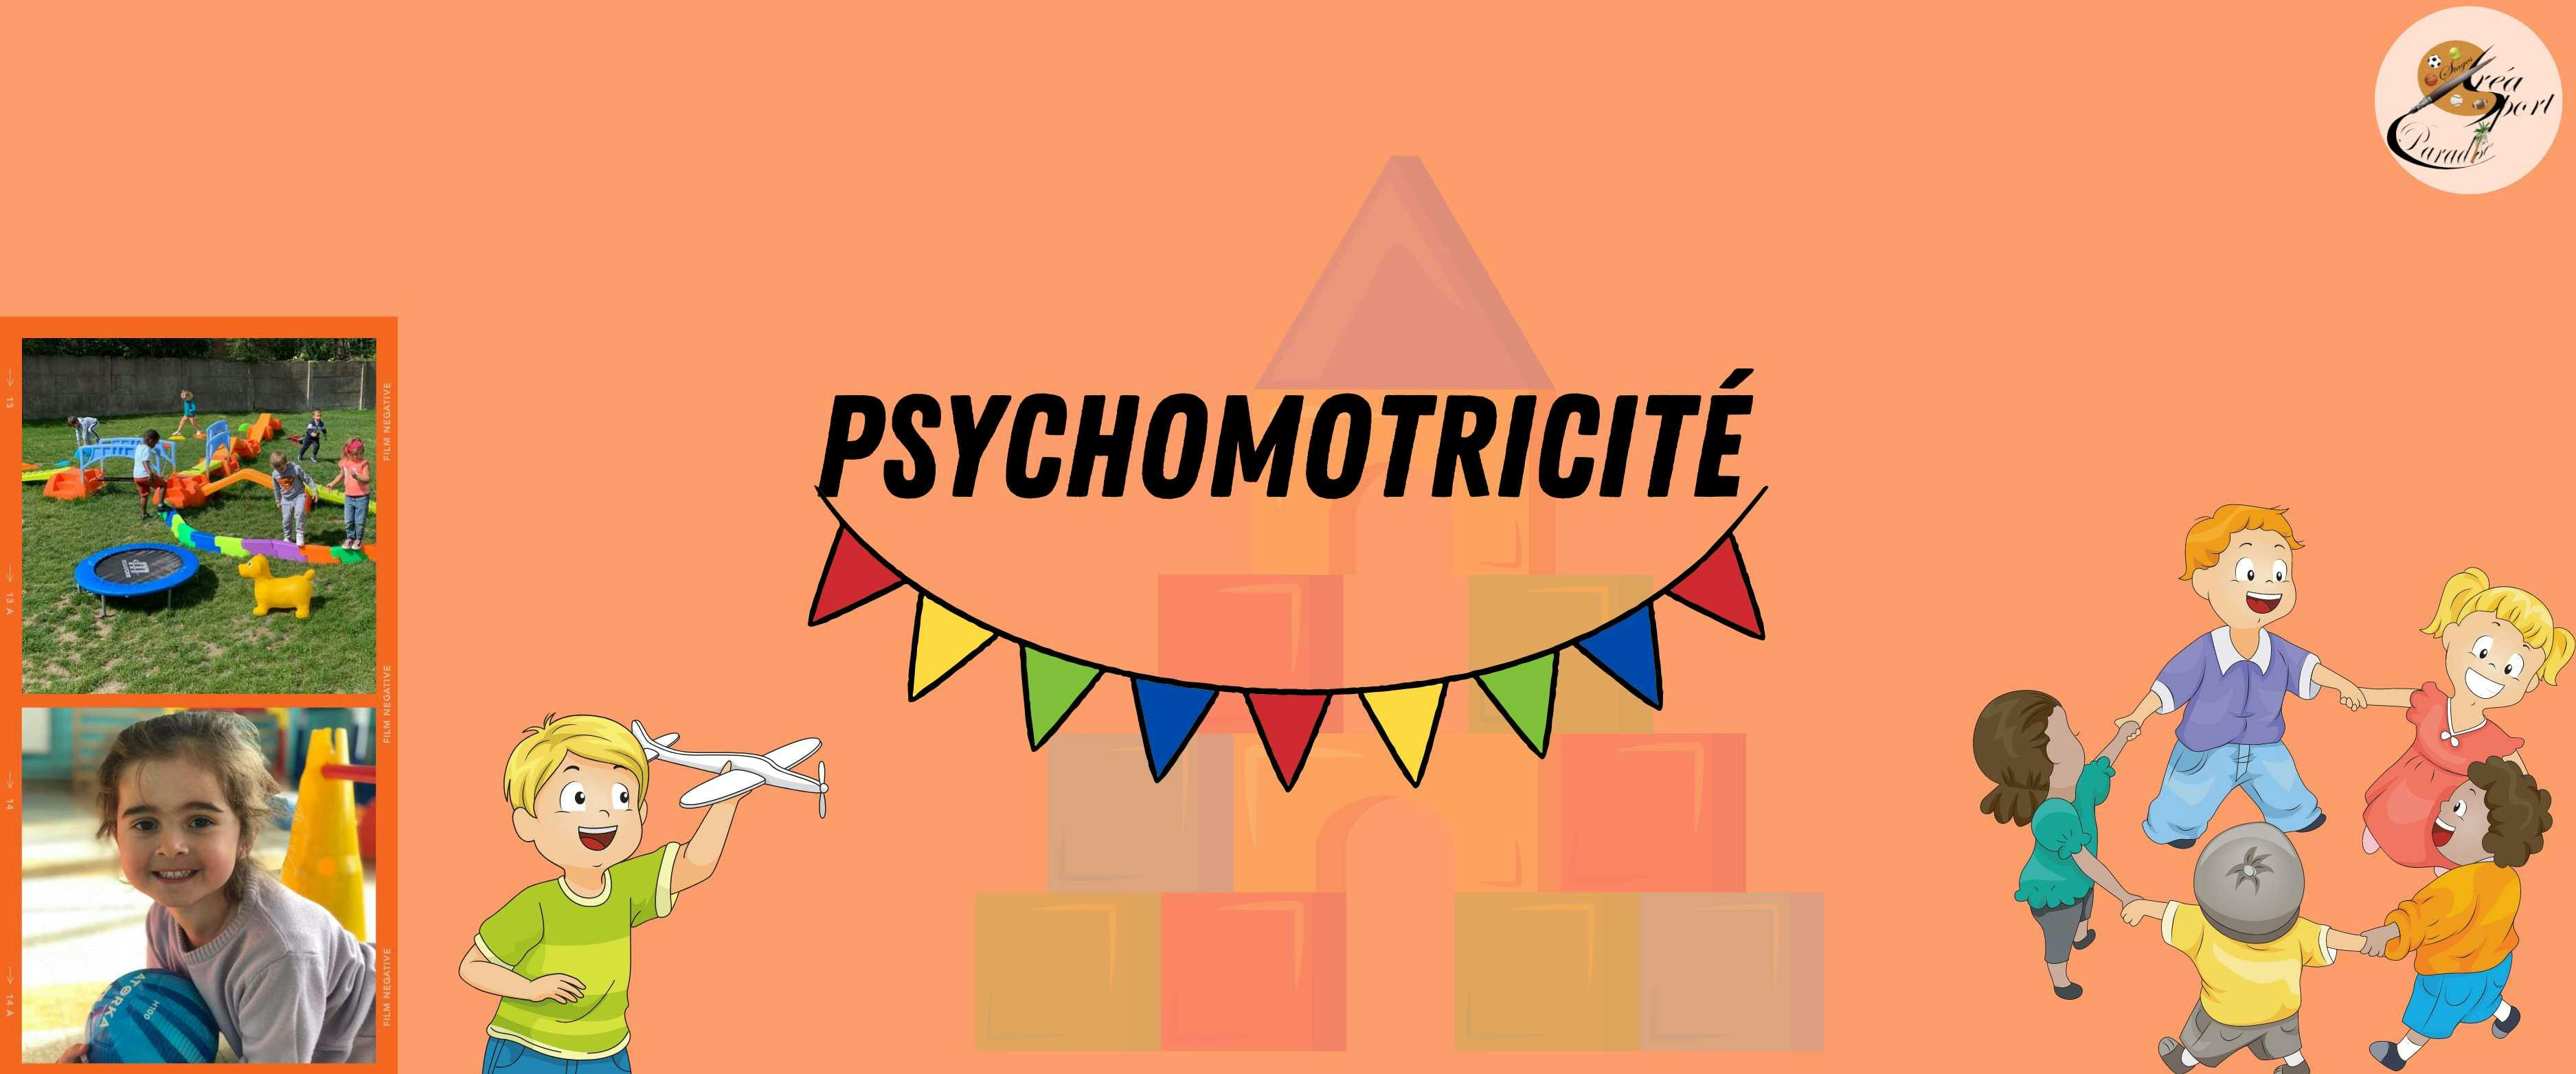 Printemps S2 : Psychomotricité